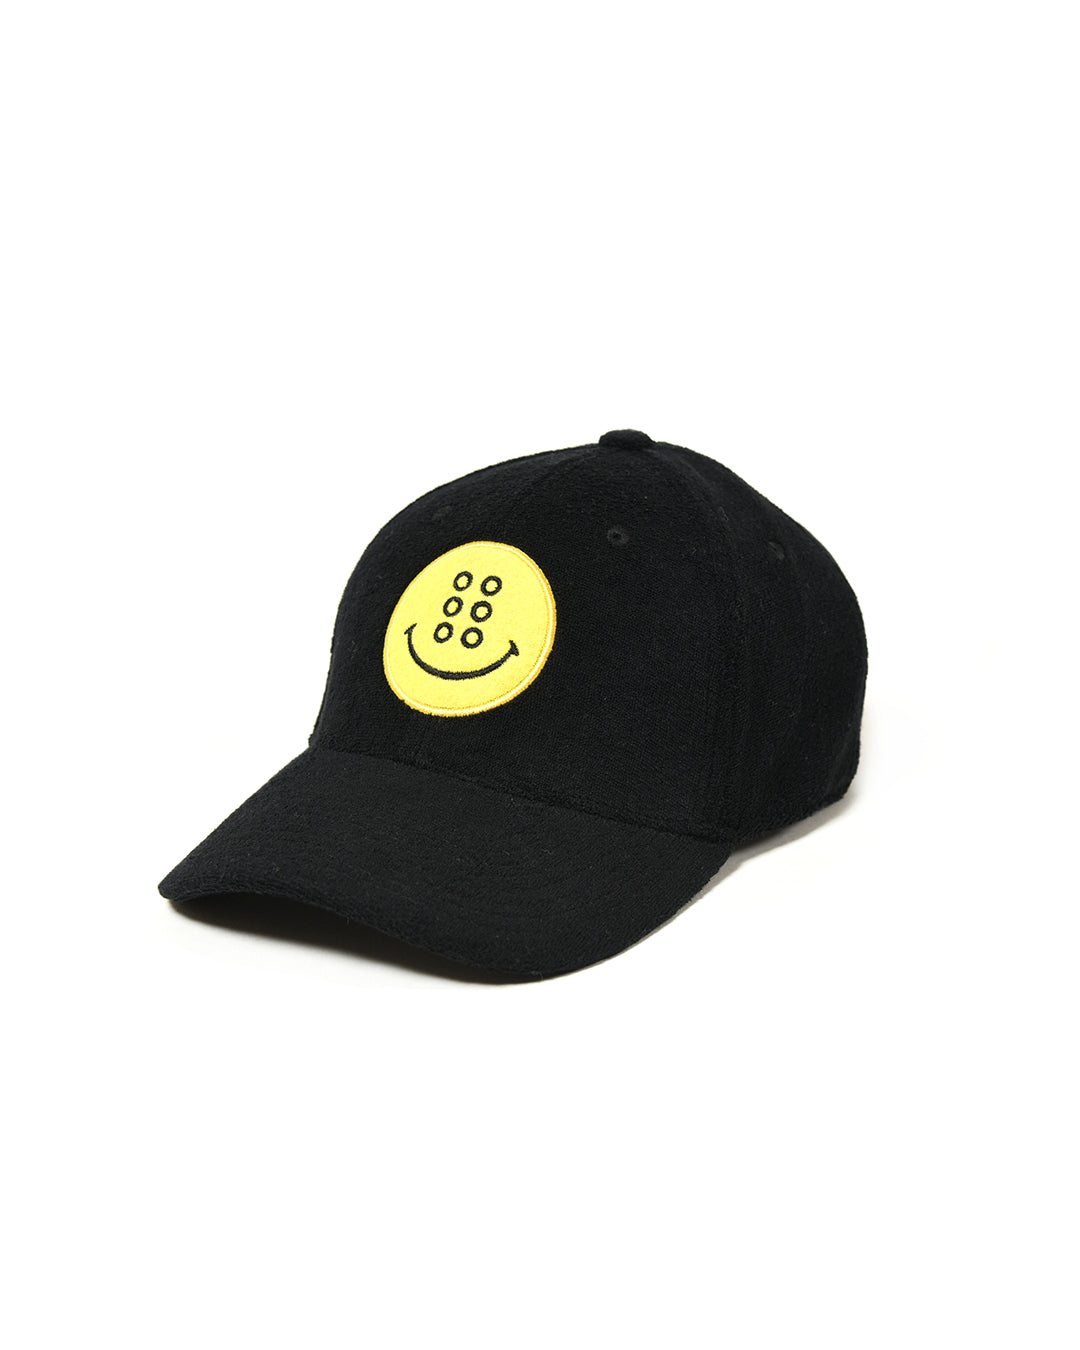 SMILE PILE CAP